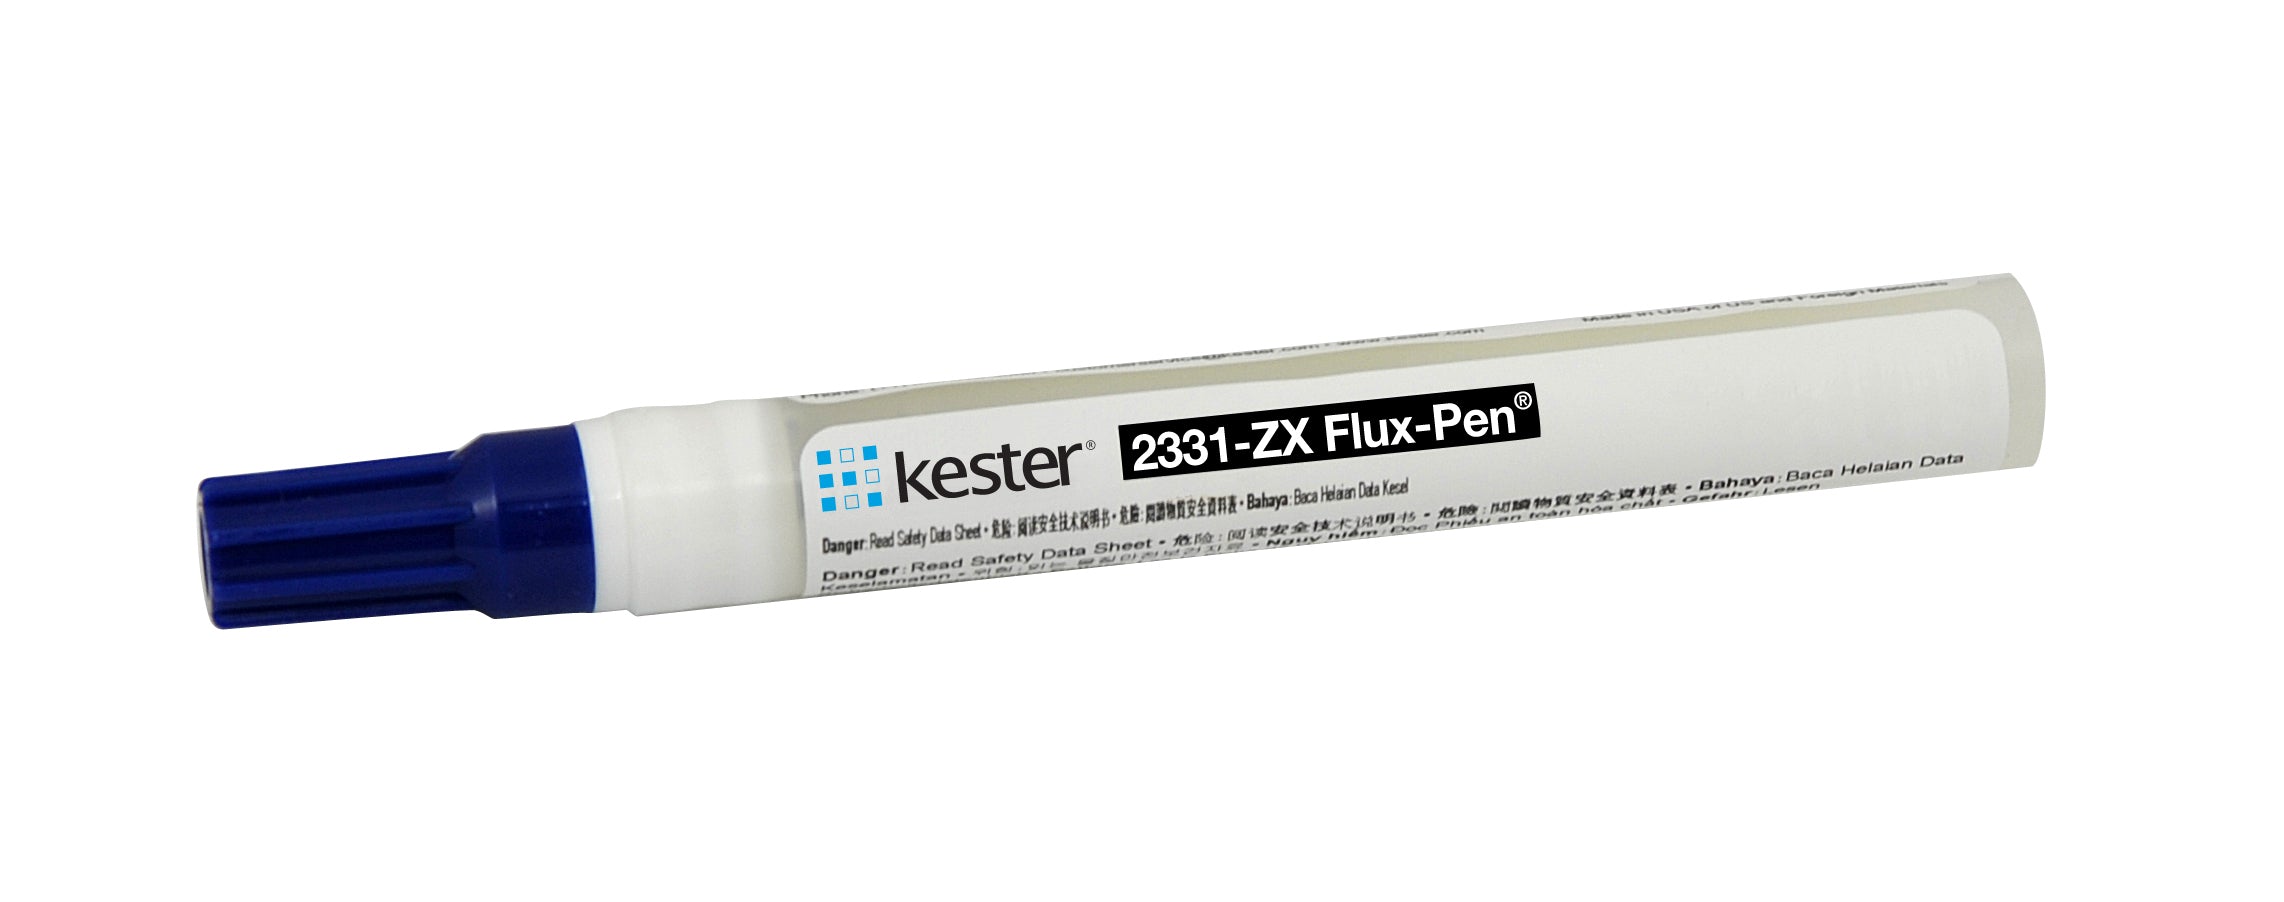 kester-2331-zx-flux-pen-water-soluble-83-1097-2331